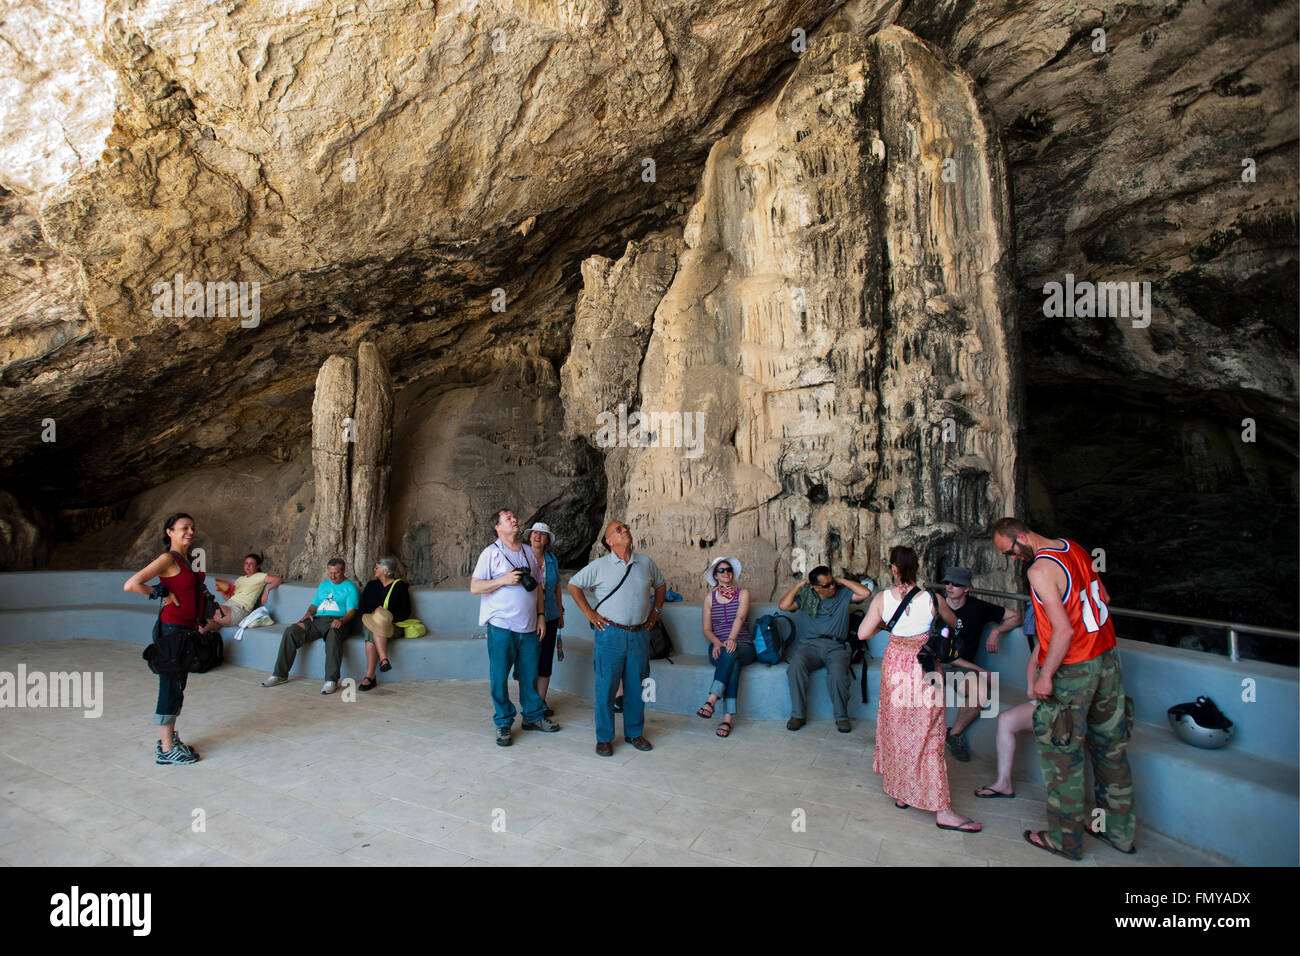 Griechenland, Kykladen, Antiparos, Besucher am Eingang zur Tropfsteinhöhle Agios Ioannis Stock Photo